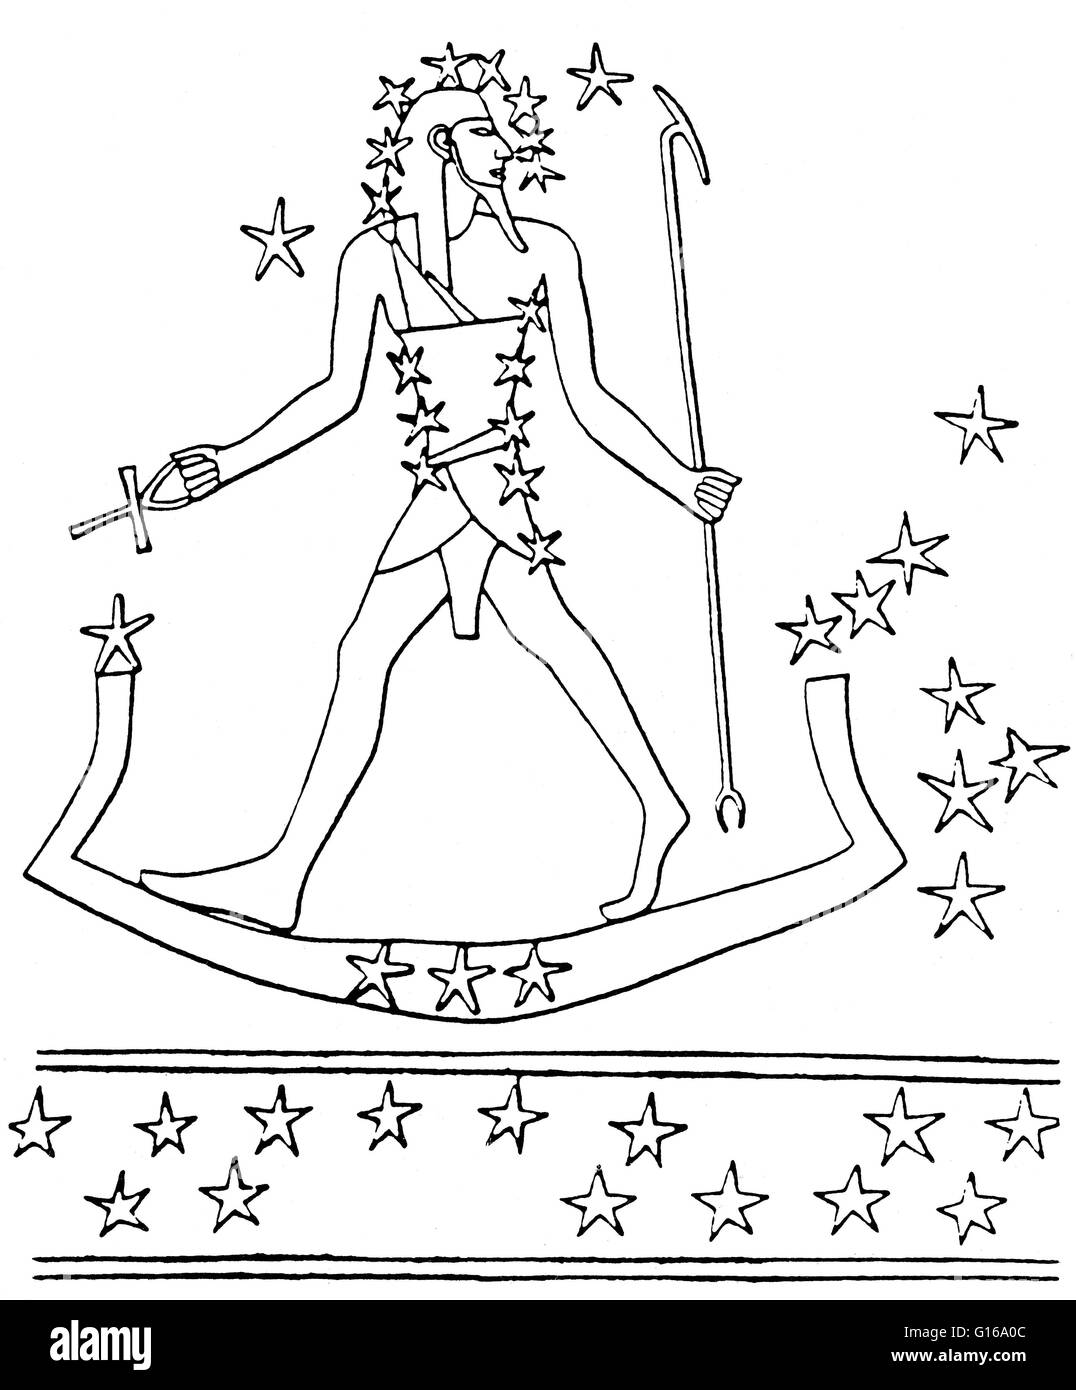 Osiris-Orion reist über den Himmel auf dem Heiligen Boot (Sterne des Lepus). Aus einer Sternenkarte im Grab des Montemhet in Luxor, ca. 650 v. Chr.. Die Sterne des Orion waren Osiris, der Sonnengott der Wiedergeburt und jenseits, von den alten Ägyptern zugeordnet. Orion Stockfoto